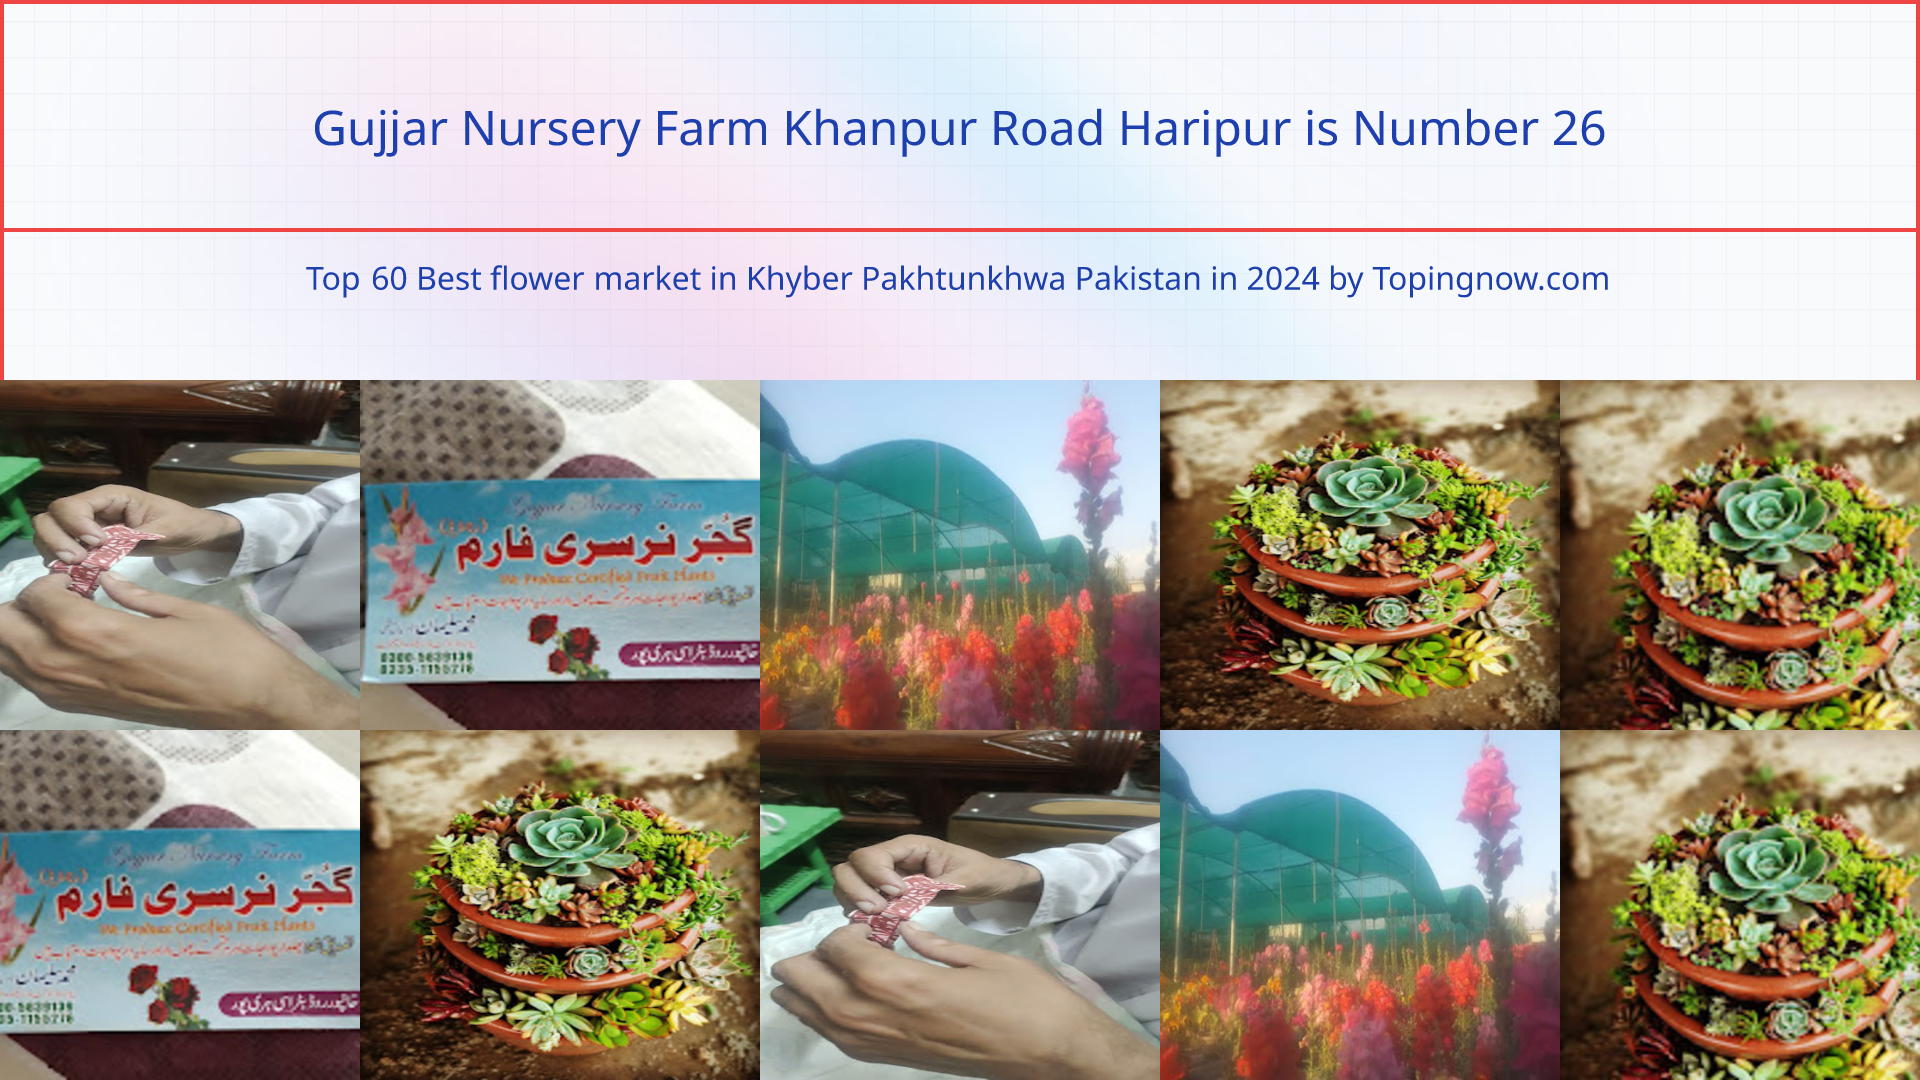 Gujjar Nursery Farm Khanpur Road Haripur: Top 60 Best flower market in Khyber Pakhtunkhwa Pakistan in 2024